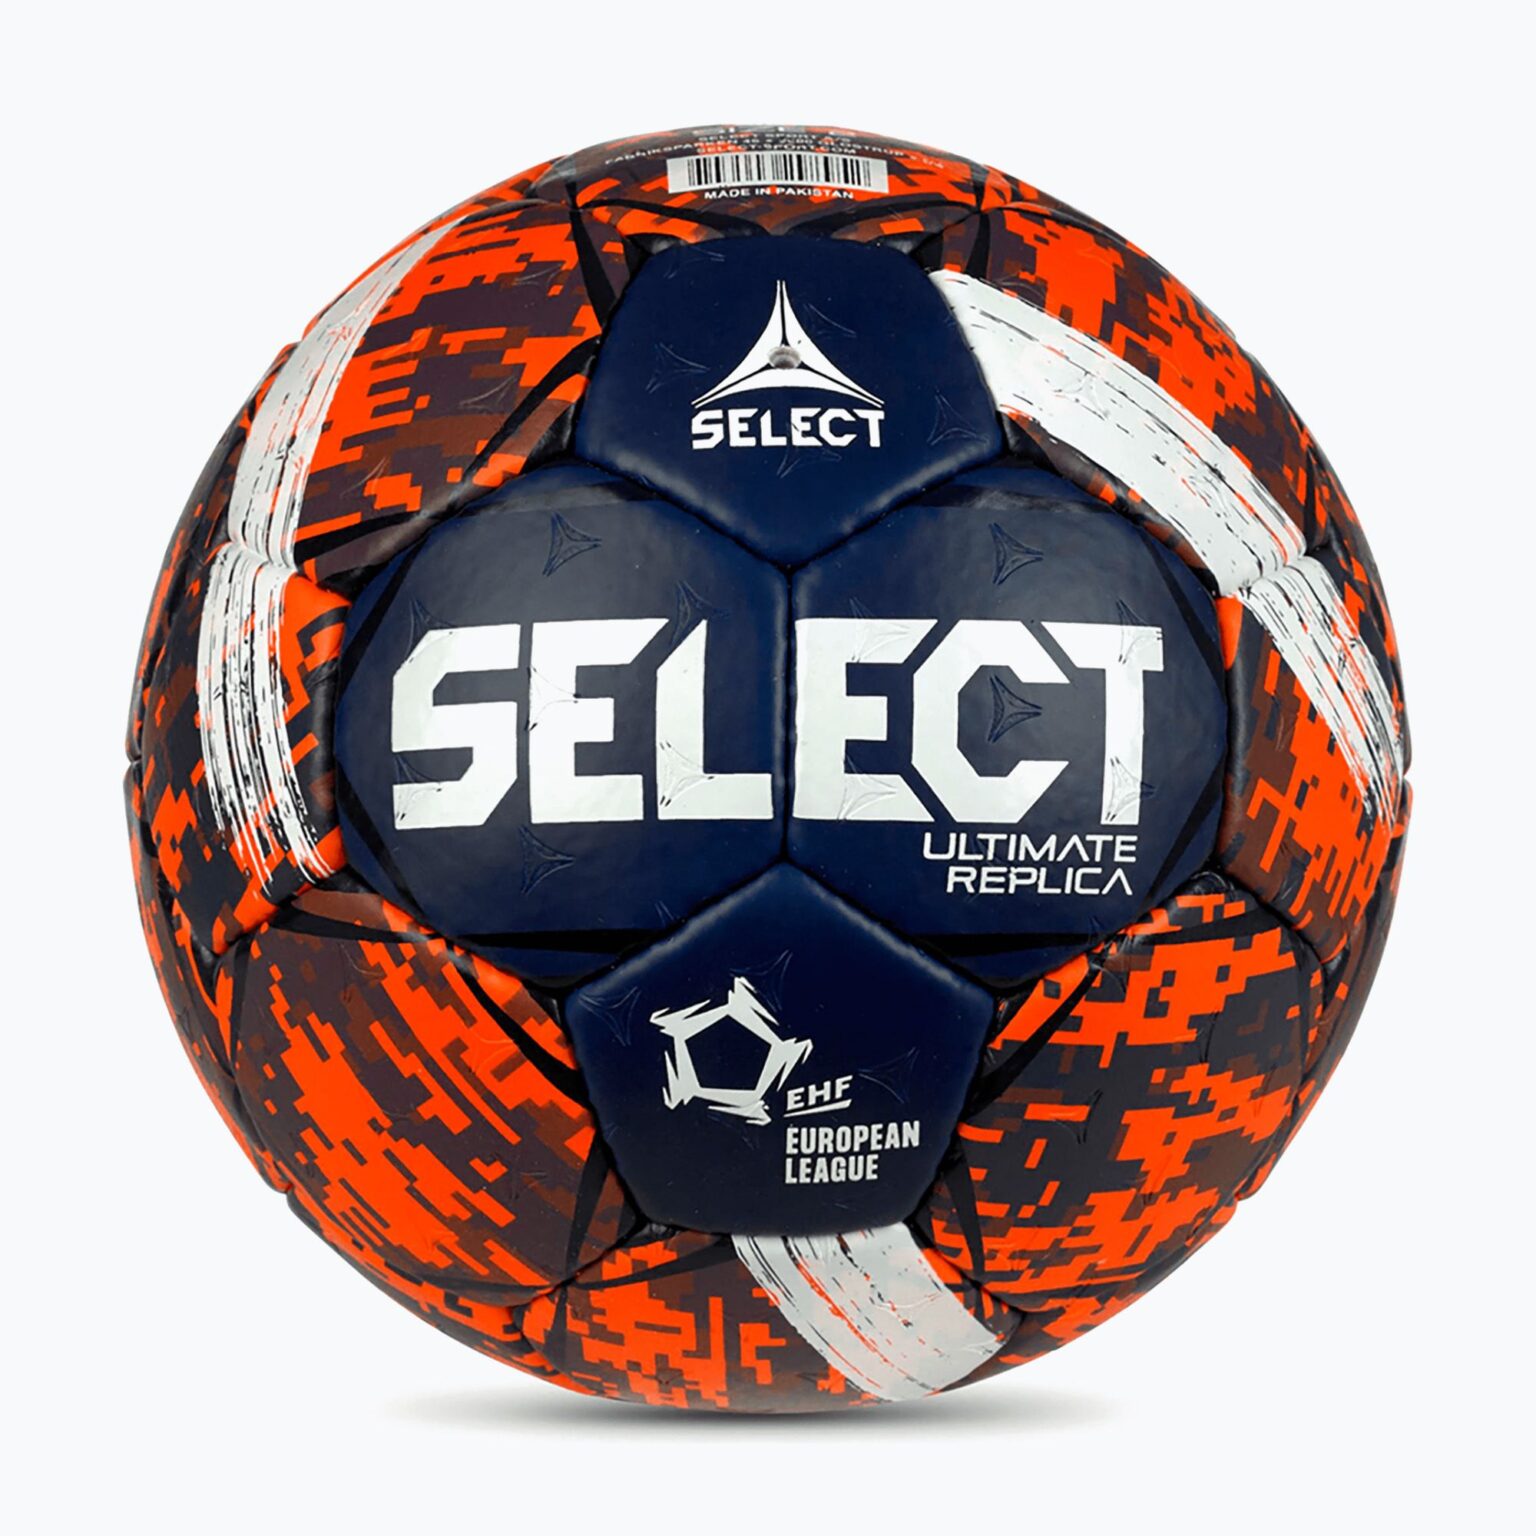 Piłka do piłki ręcznej SELECT Ultimate LE v23 EHF Replica rozmiar 0 red/blue